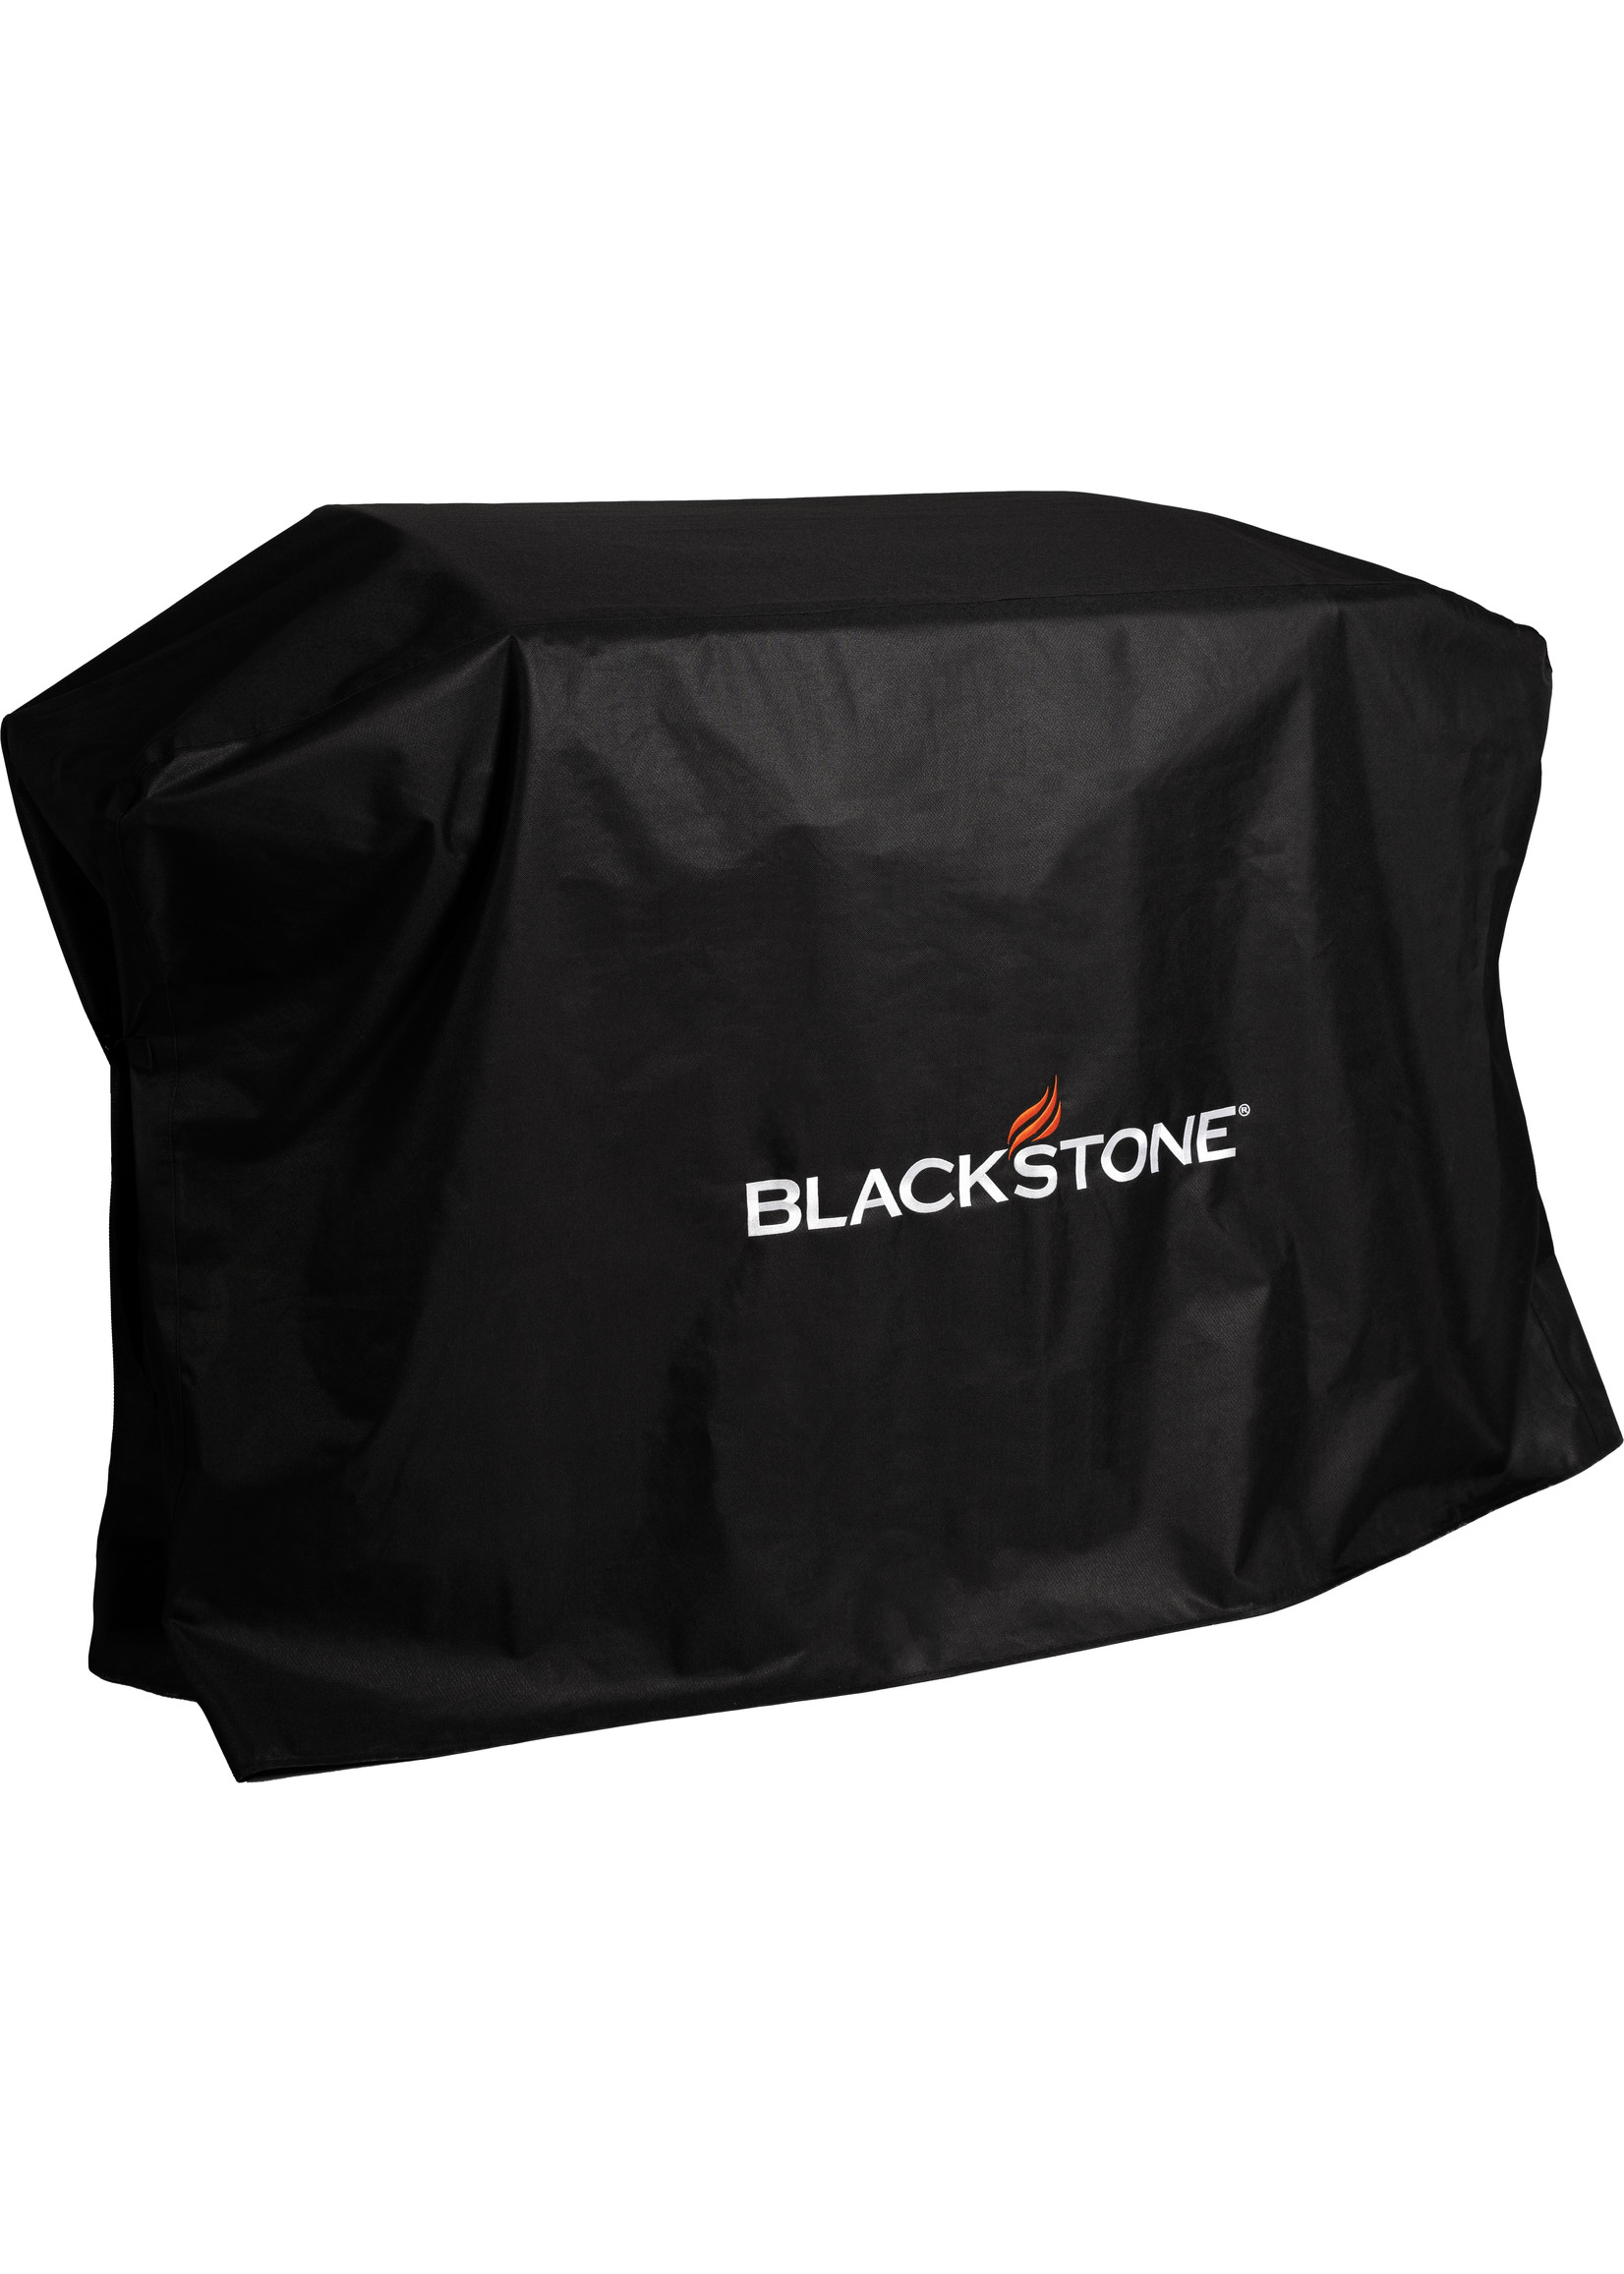 Blackstone Blackstone Griddle Cover